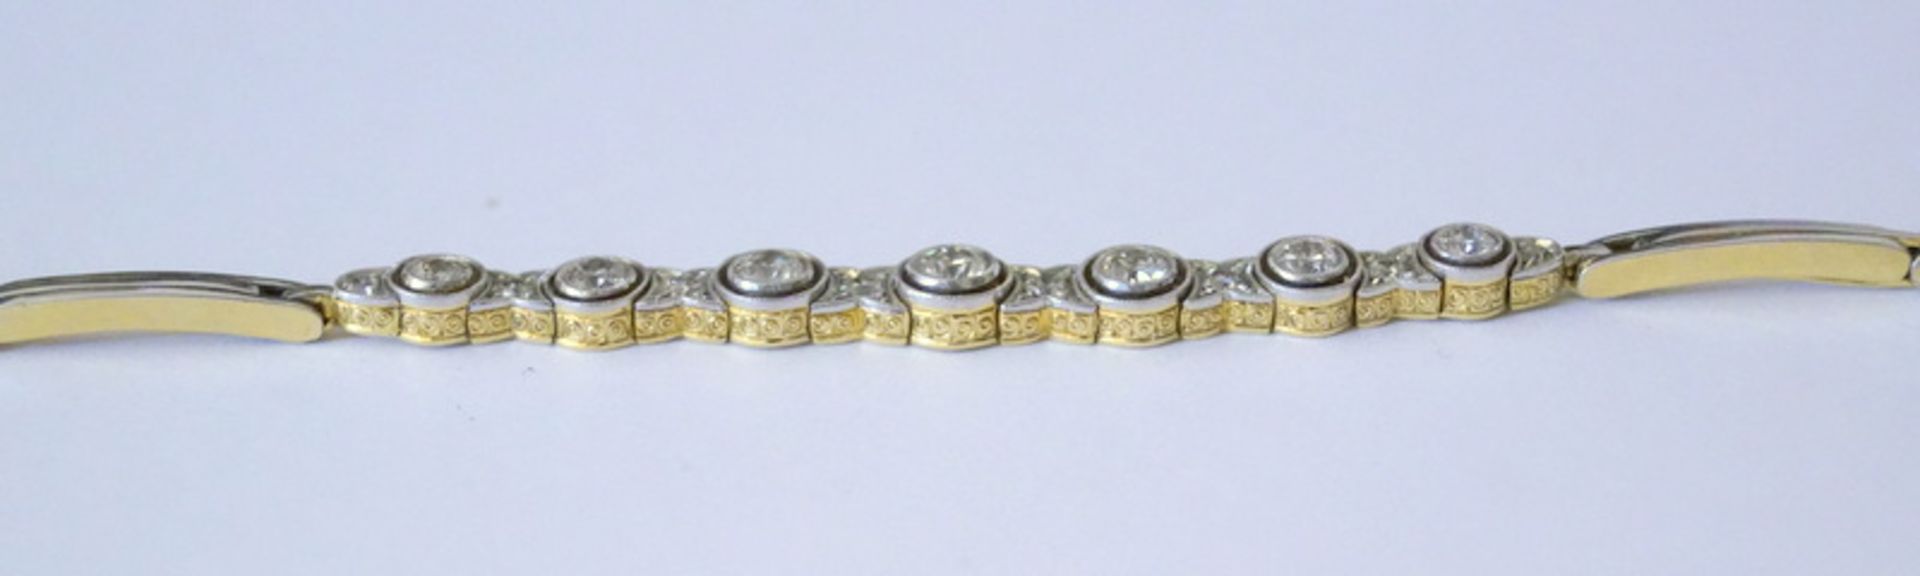 Feines Armband des Art-Déco mit Diamantbesatz, Platin und GG, zus. ca. 1,1 ct Diamantbesatz< - Bild 5 aus 9